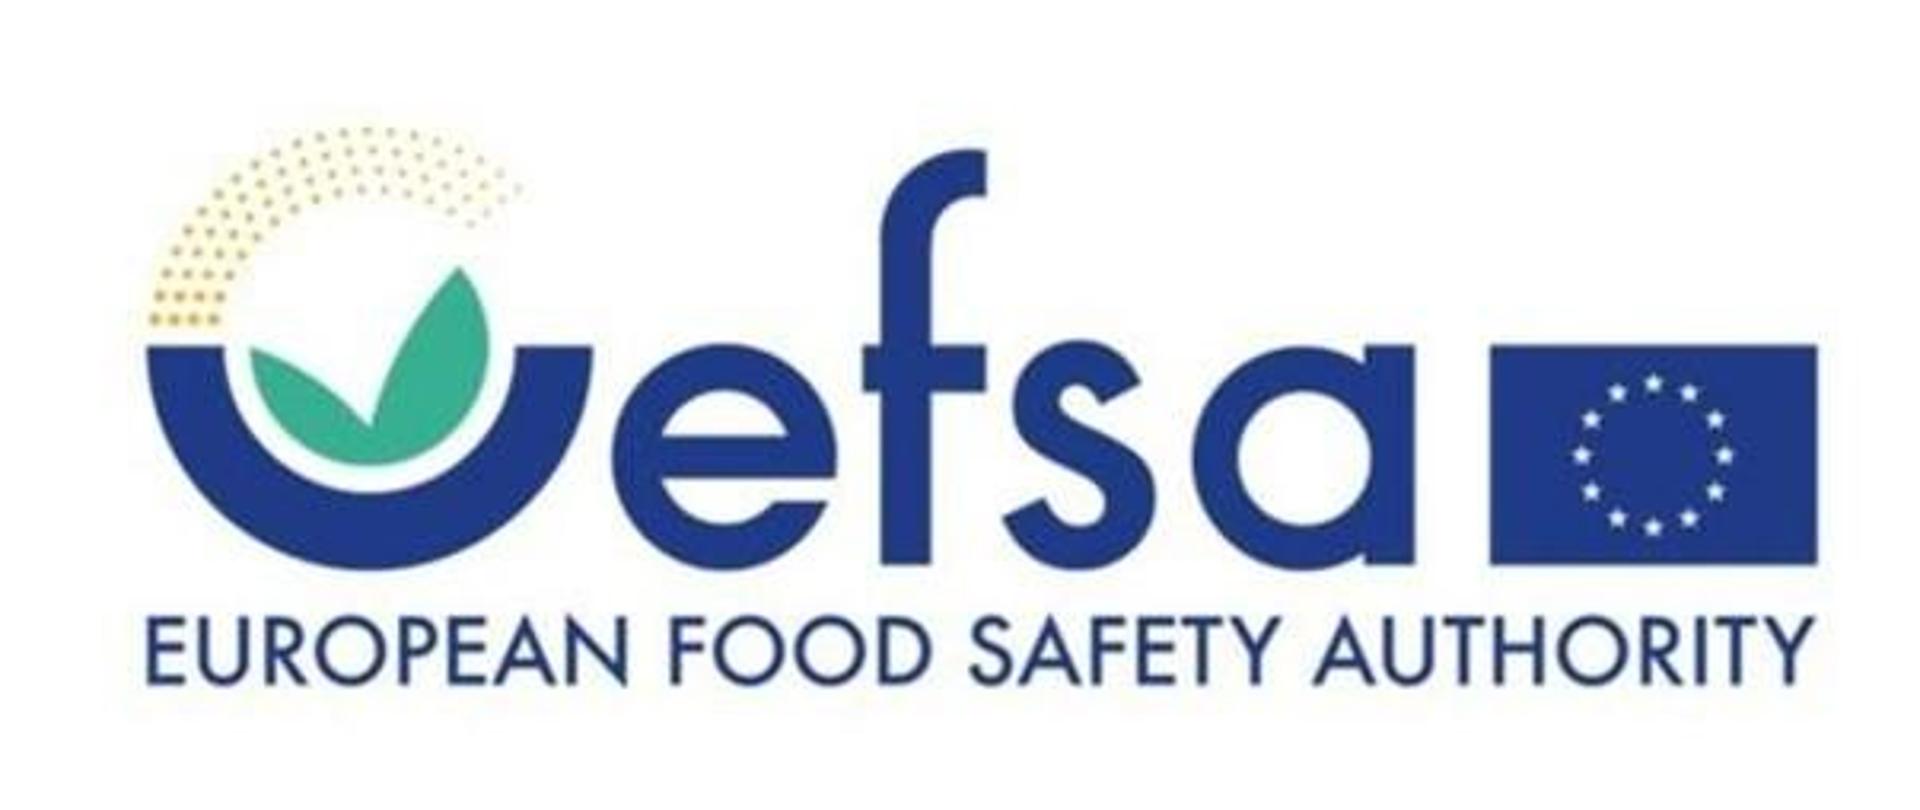 Niebieski napis EFSA EUROPEAN FOOD SAFETY AUTHORITY, z lewej strony flaga Unii Europejskiej.